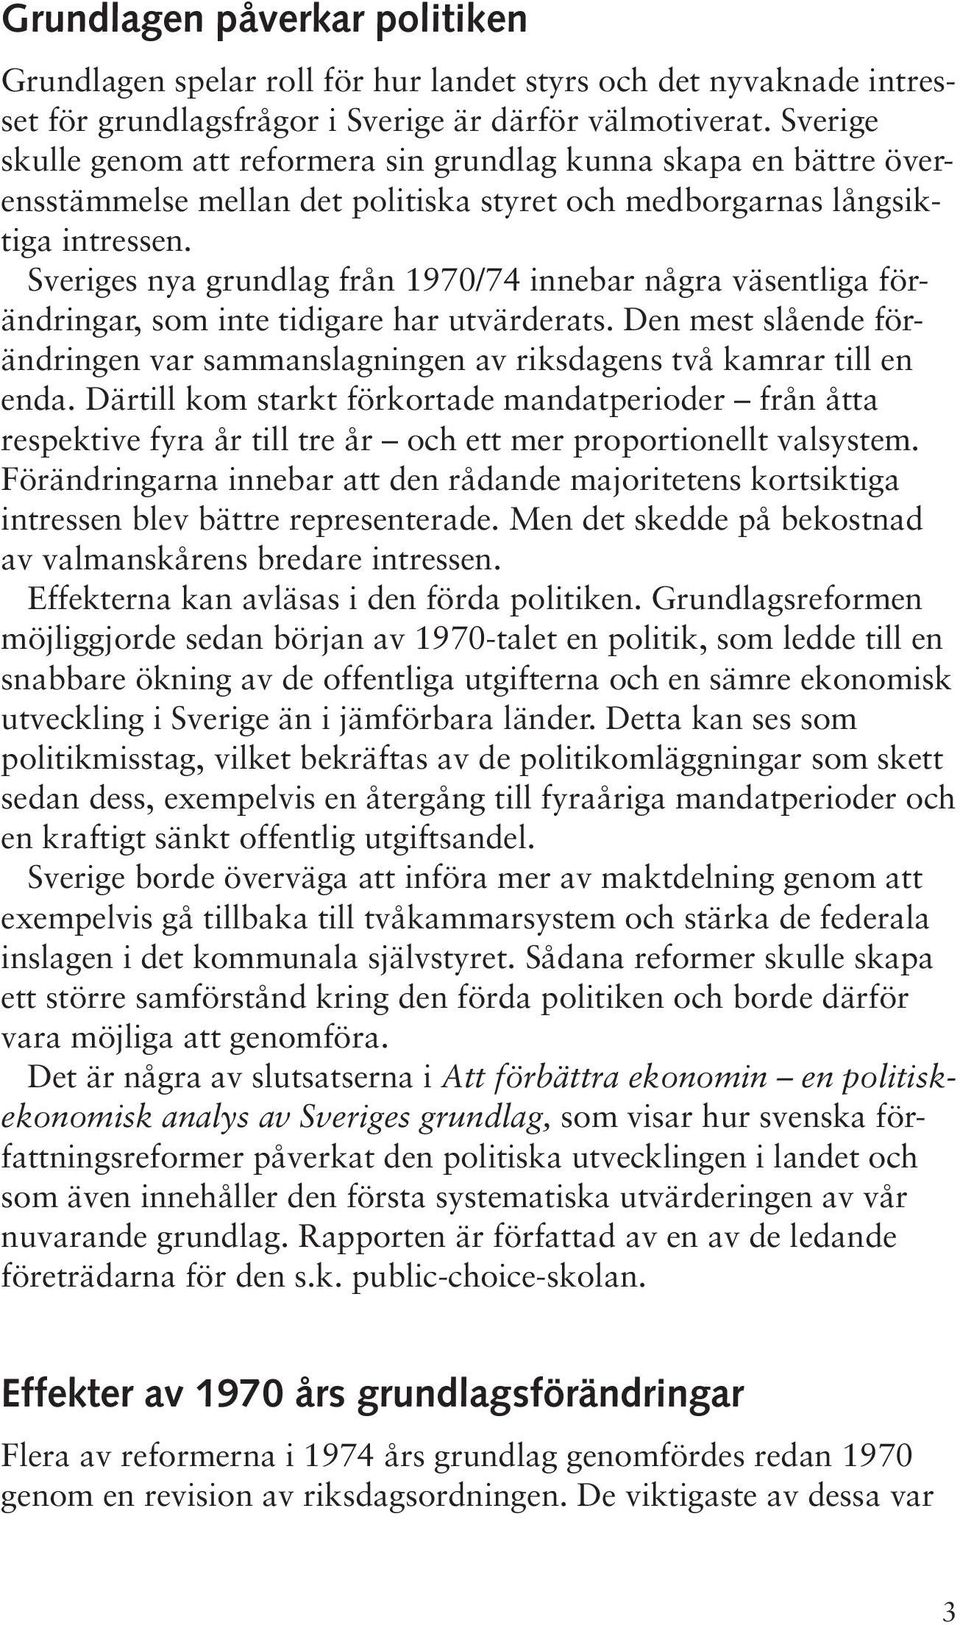 Sveriges nya grundlag från 1970/74 innebar några väsentliga förändringar, som inte tidigare har utvärderats. Den mest slående förändringen var sammanslagningen av riksdagens två kamrar till en enda.